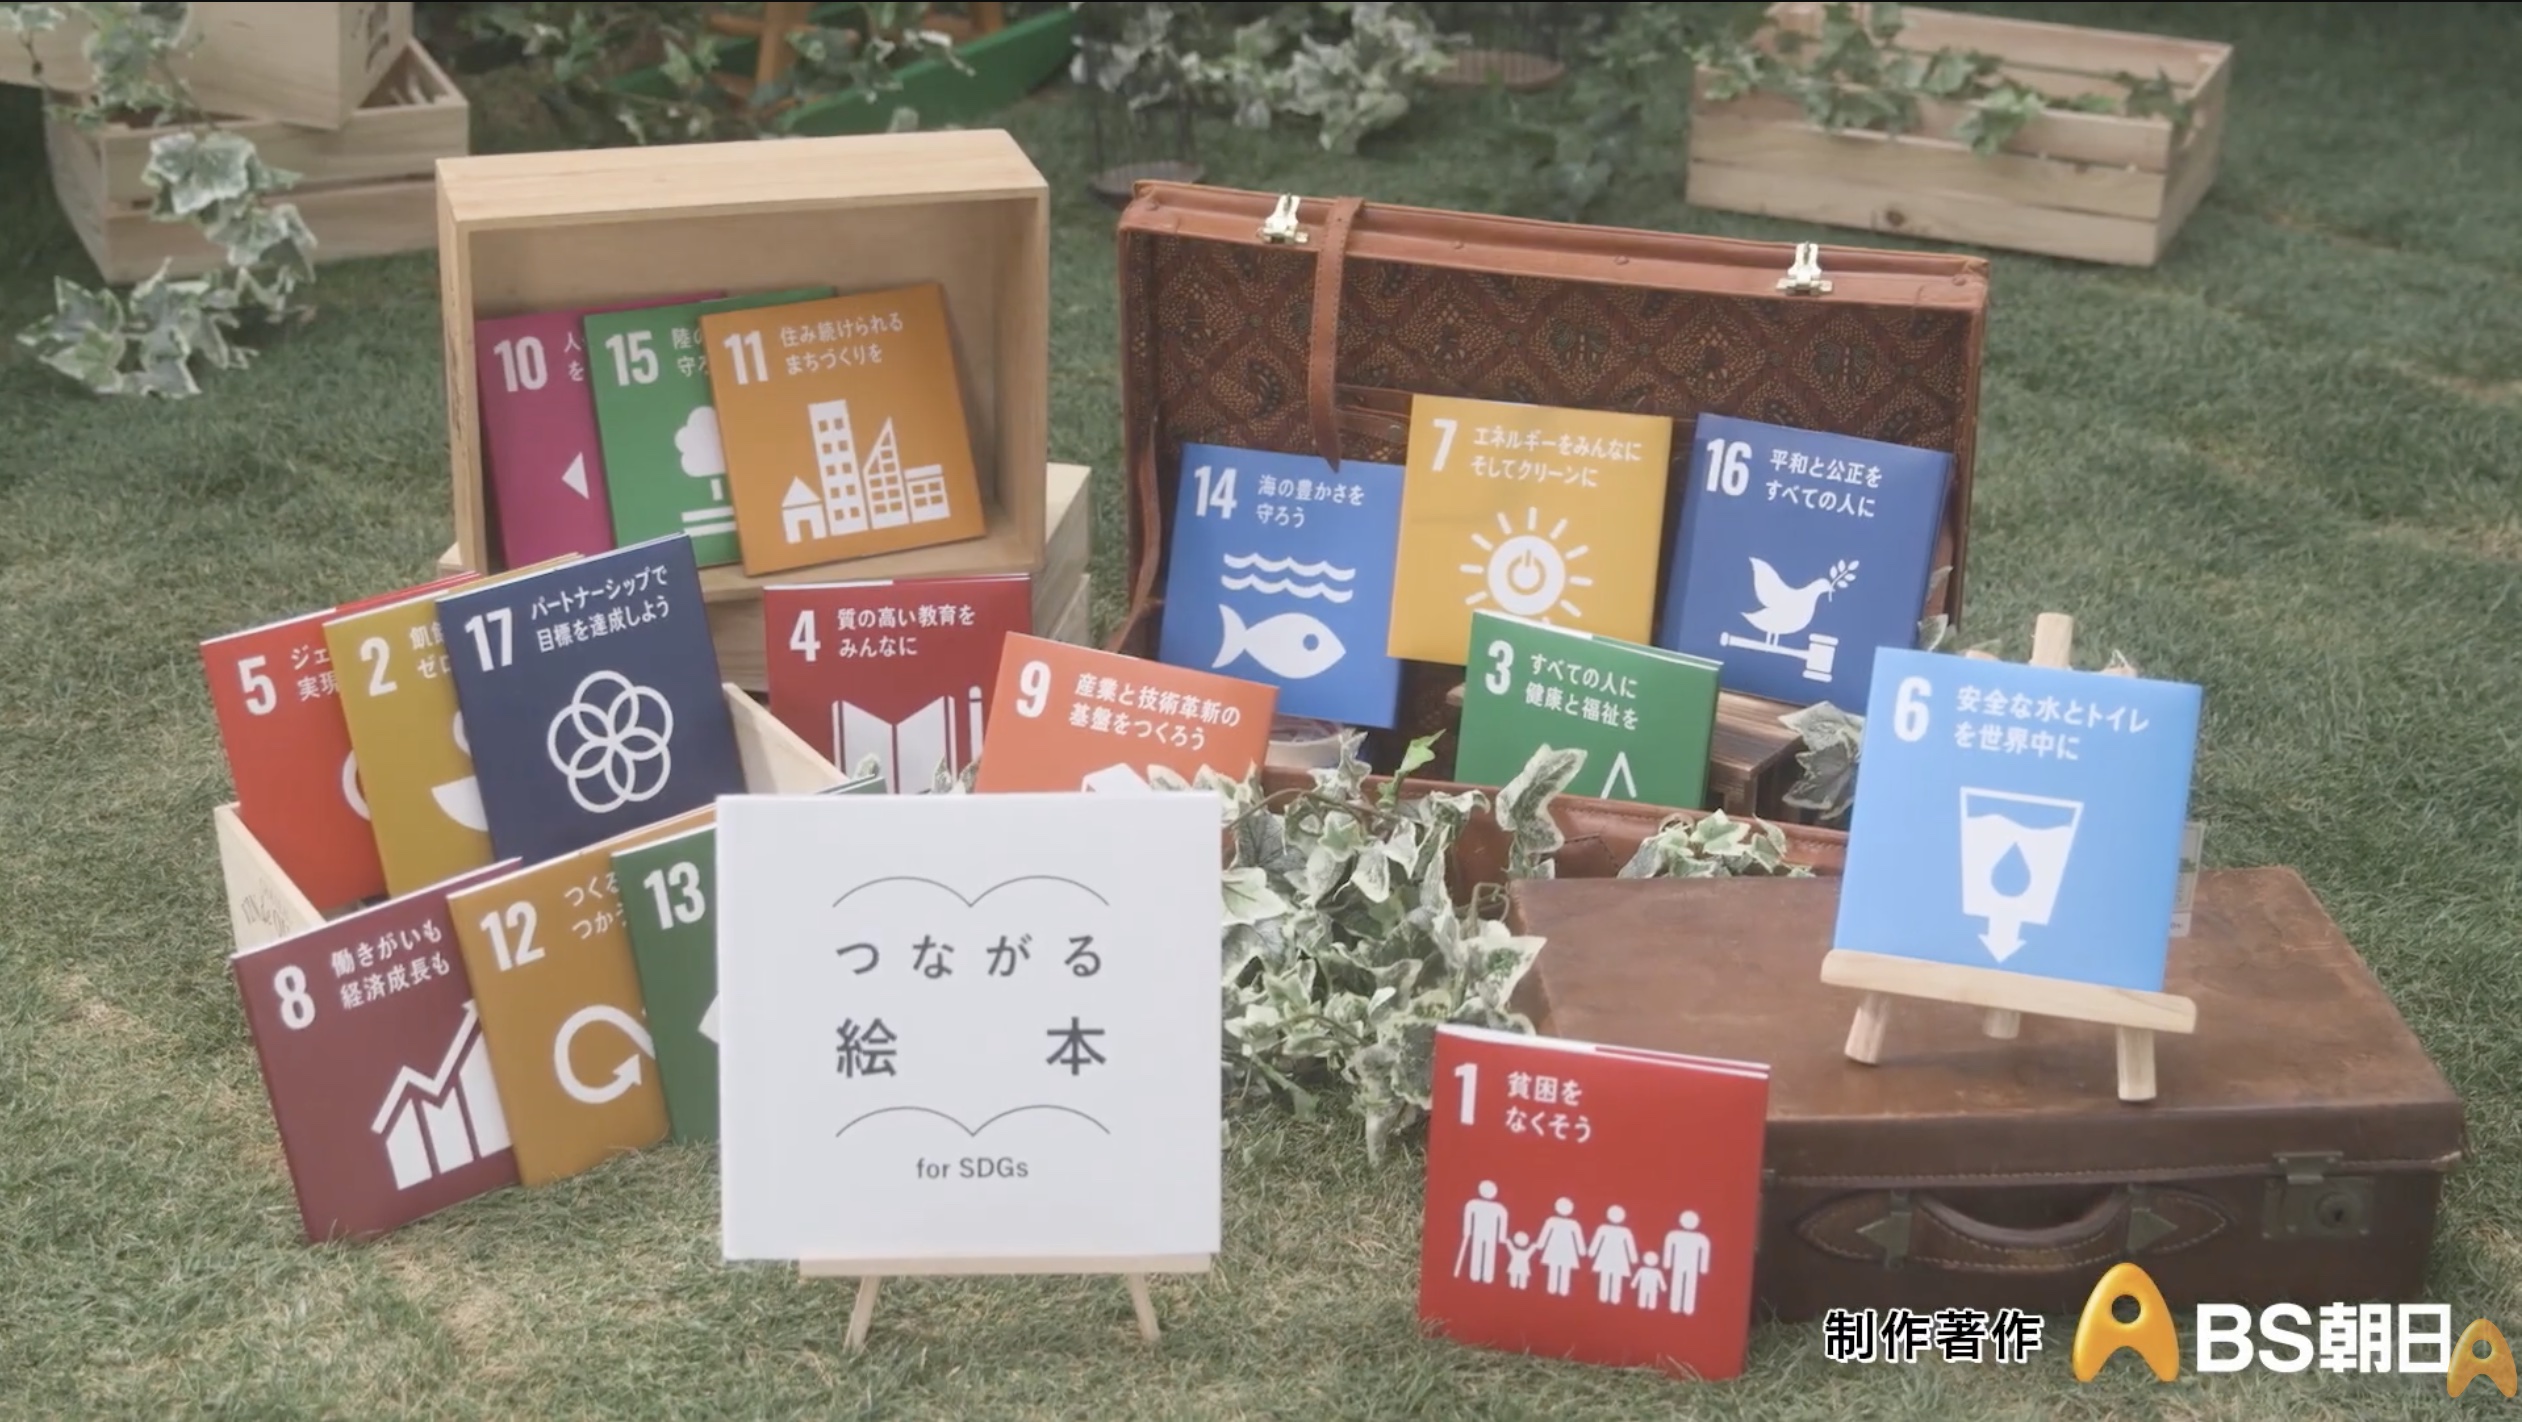 [ BS朝日 ] つながる絵本〜for SDGs〜 Media is Hope「未来につなげるパートナー」が放映されました！